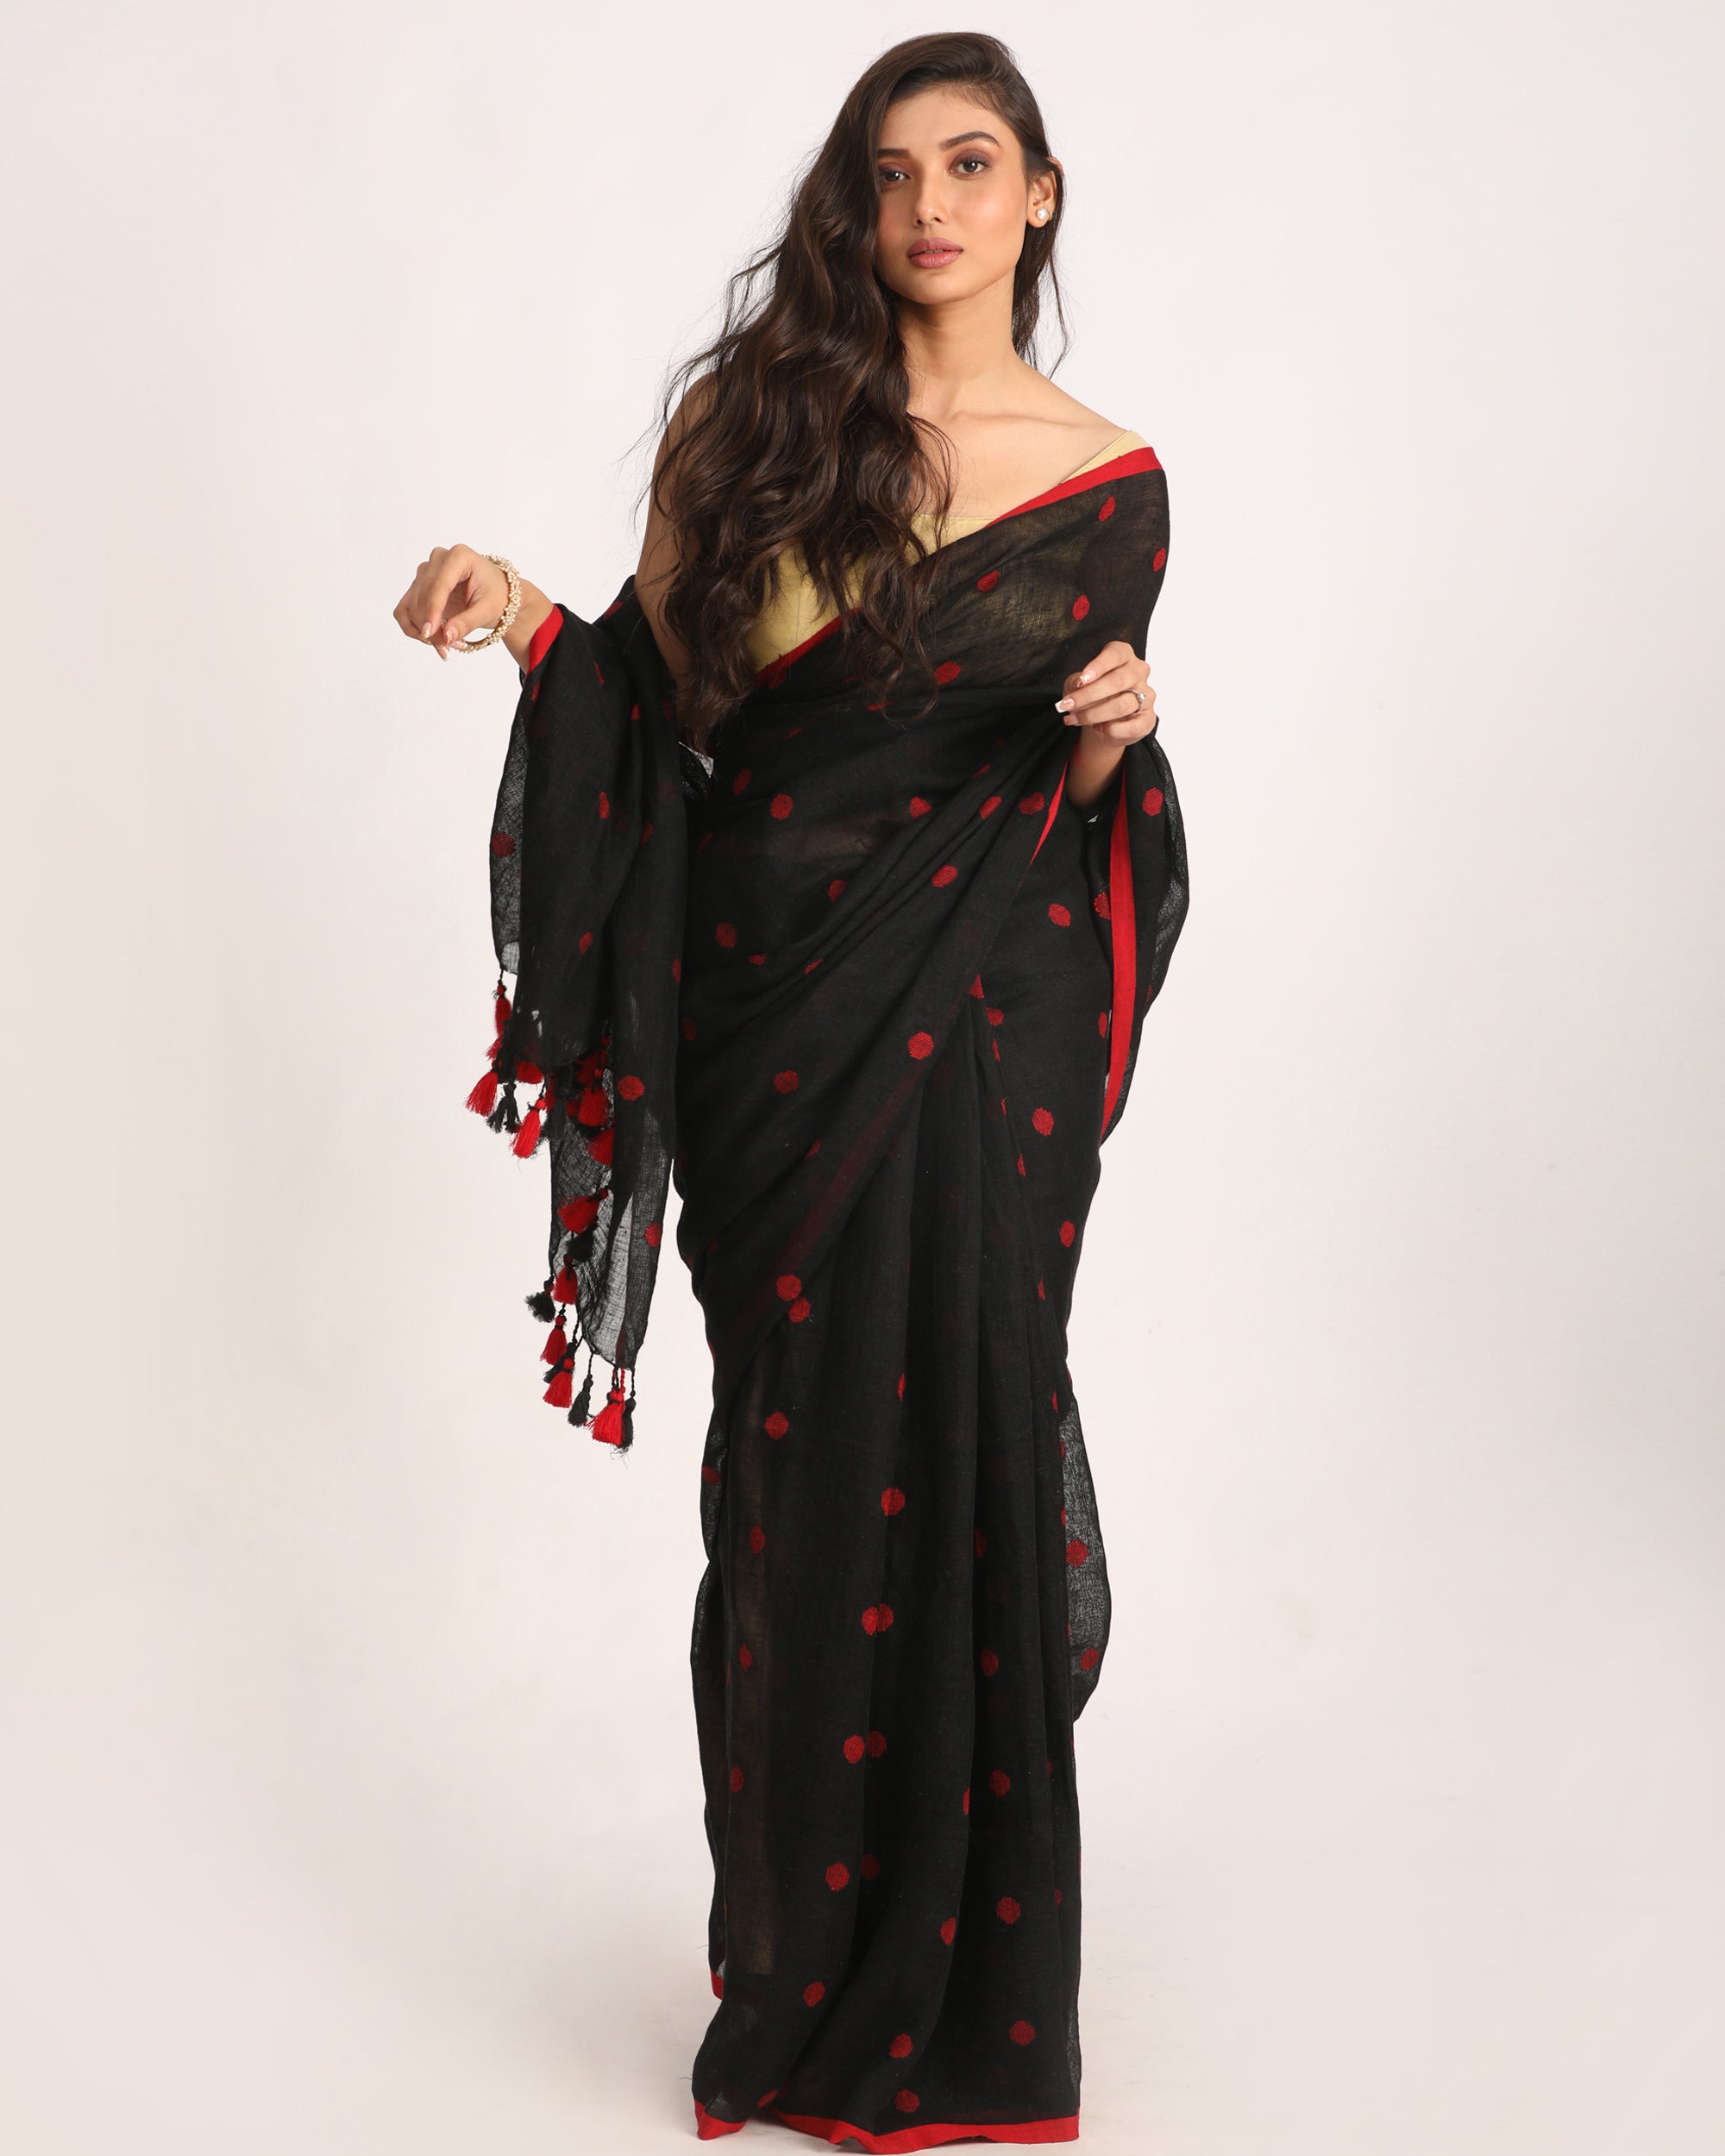 Women's Black Traditional Handloom Linen Jamdani Saree - Angoshobha